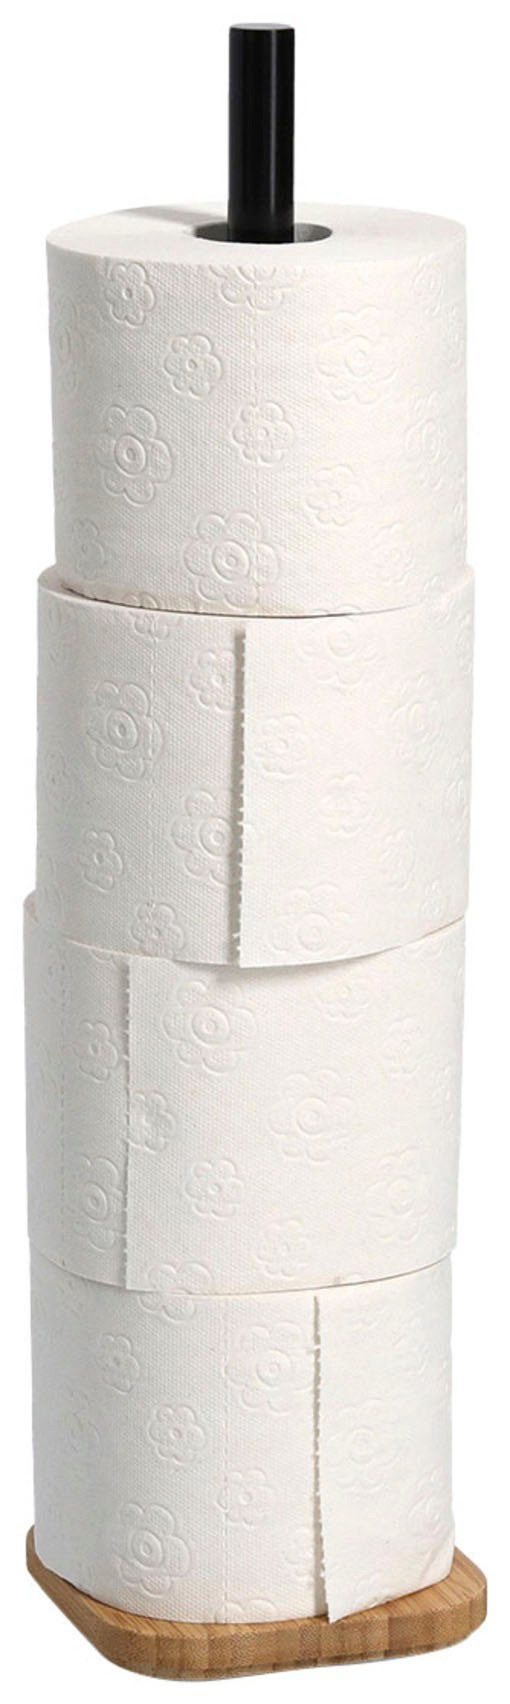 Bambus WC-Rollenhalter, Present Zeller Toiletten-Ersatzrollenhalter,